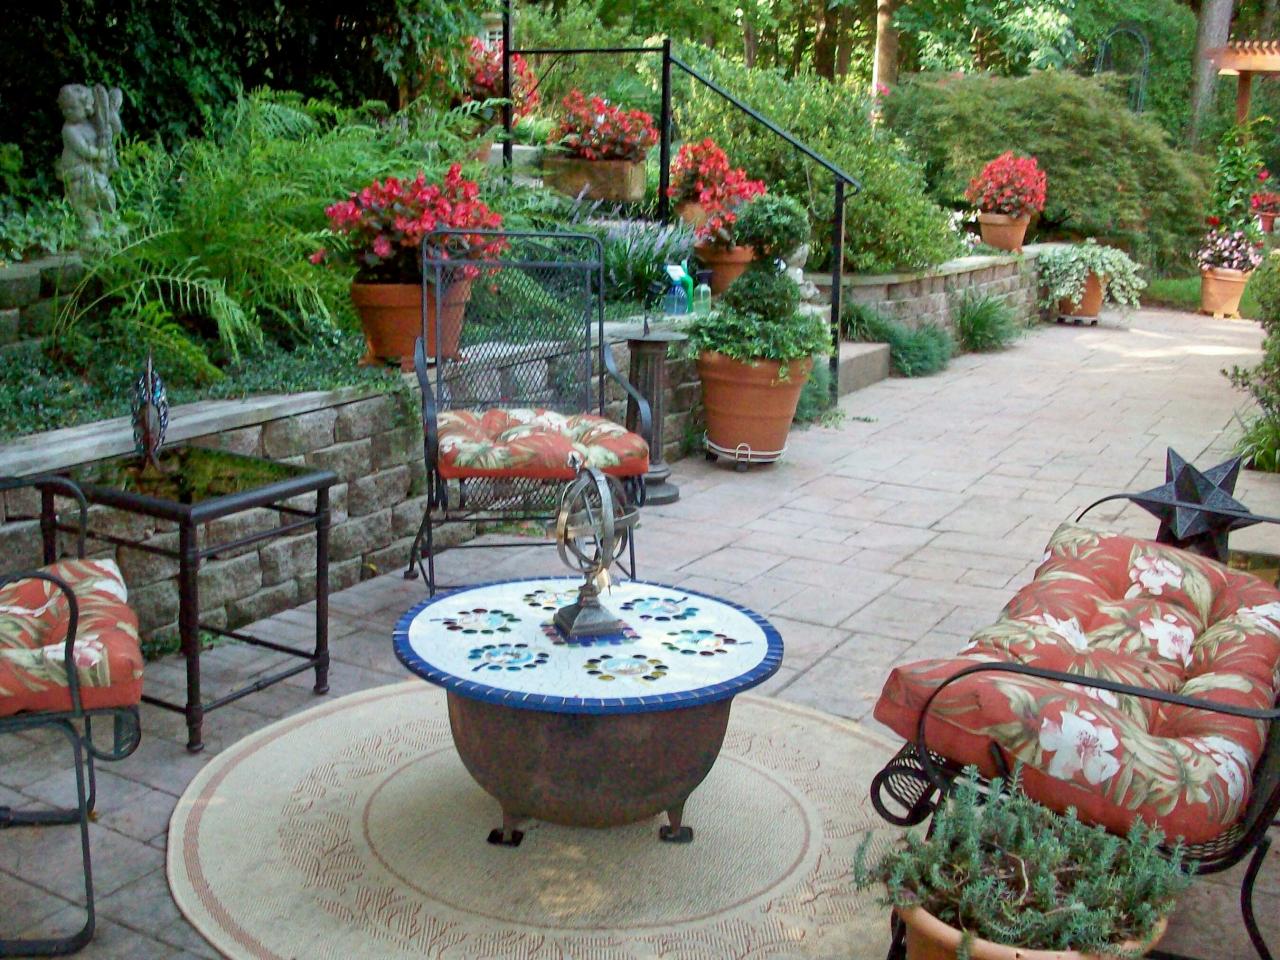 Salon de jardin stylé panagal marocaine table stylé moderne design plante coussins colorés